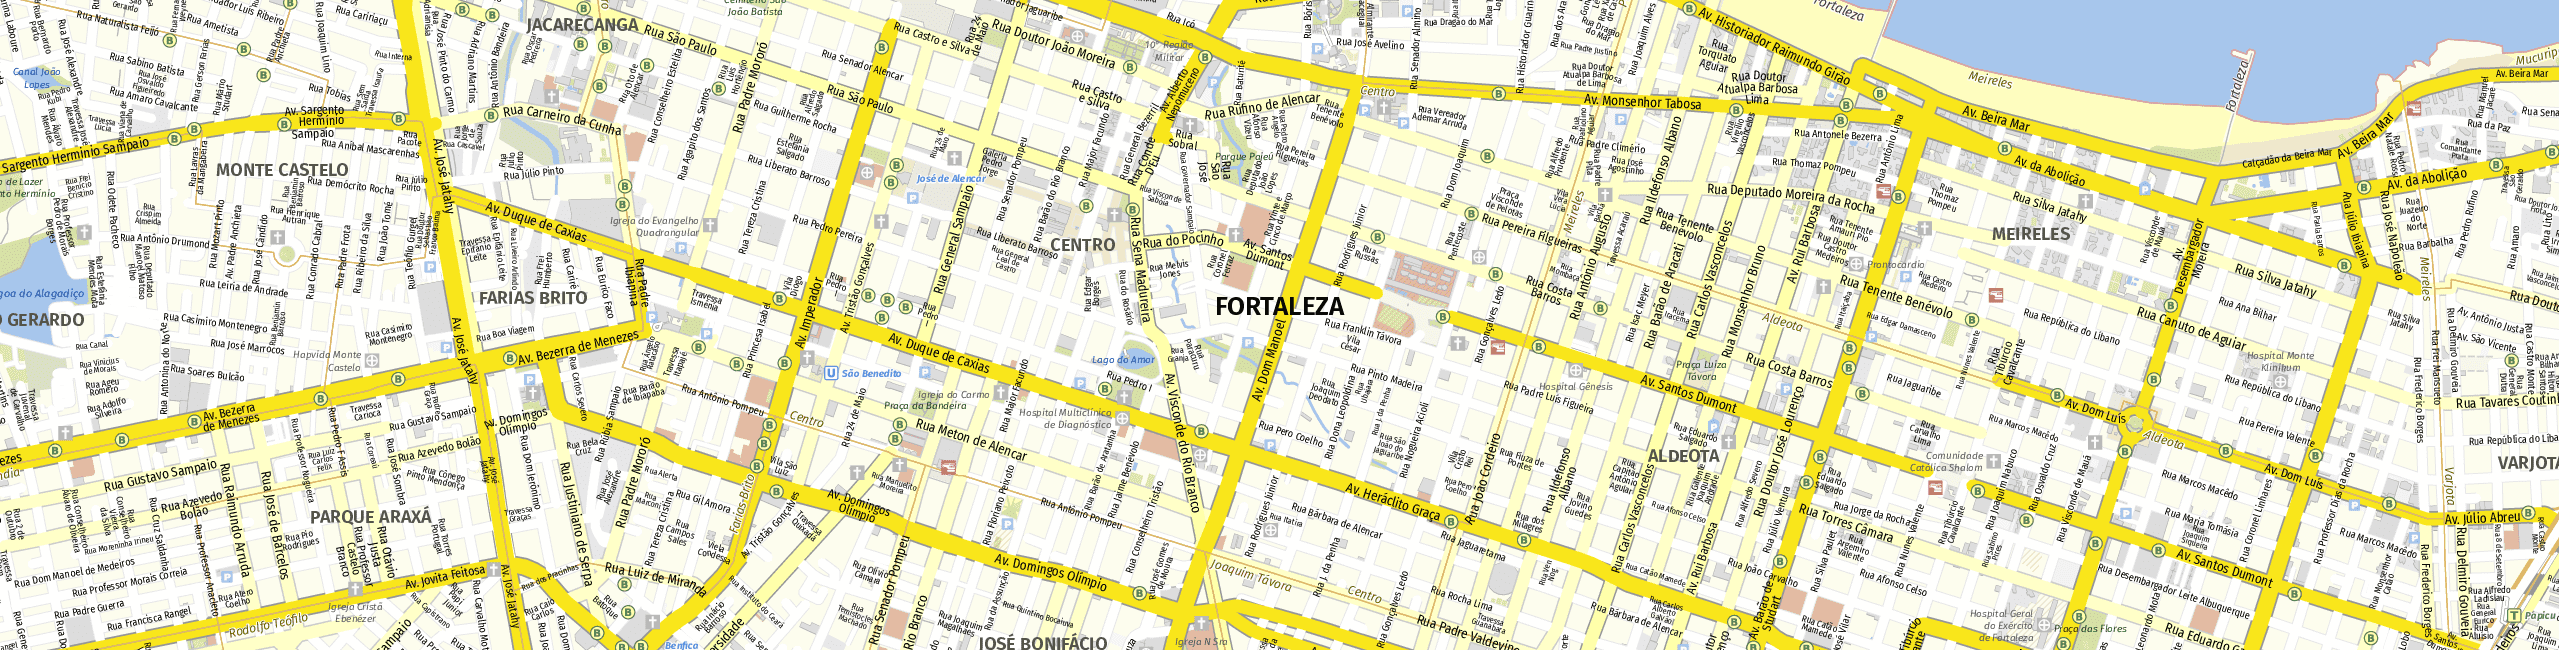 Stadtplan Fortaleza zum Downloaden.